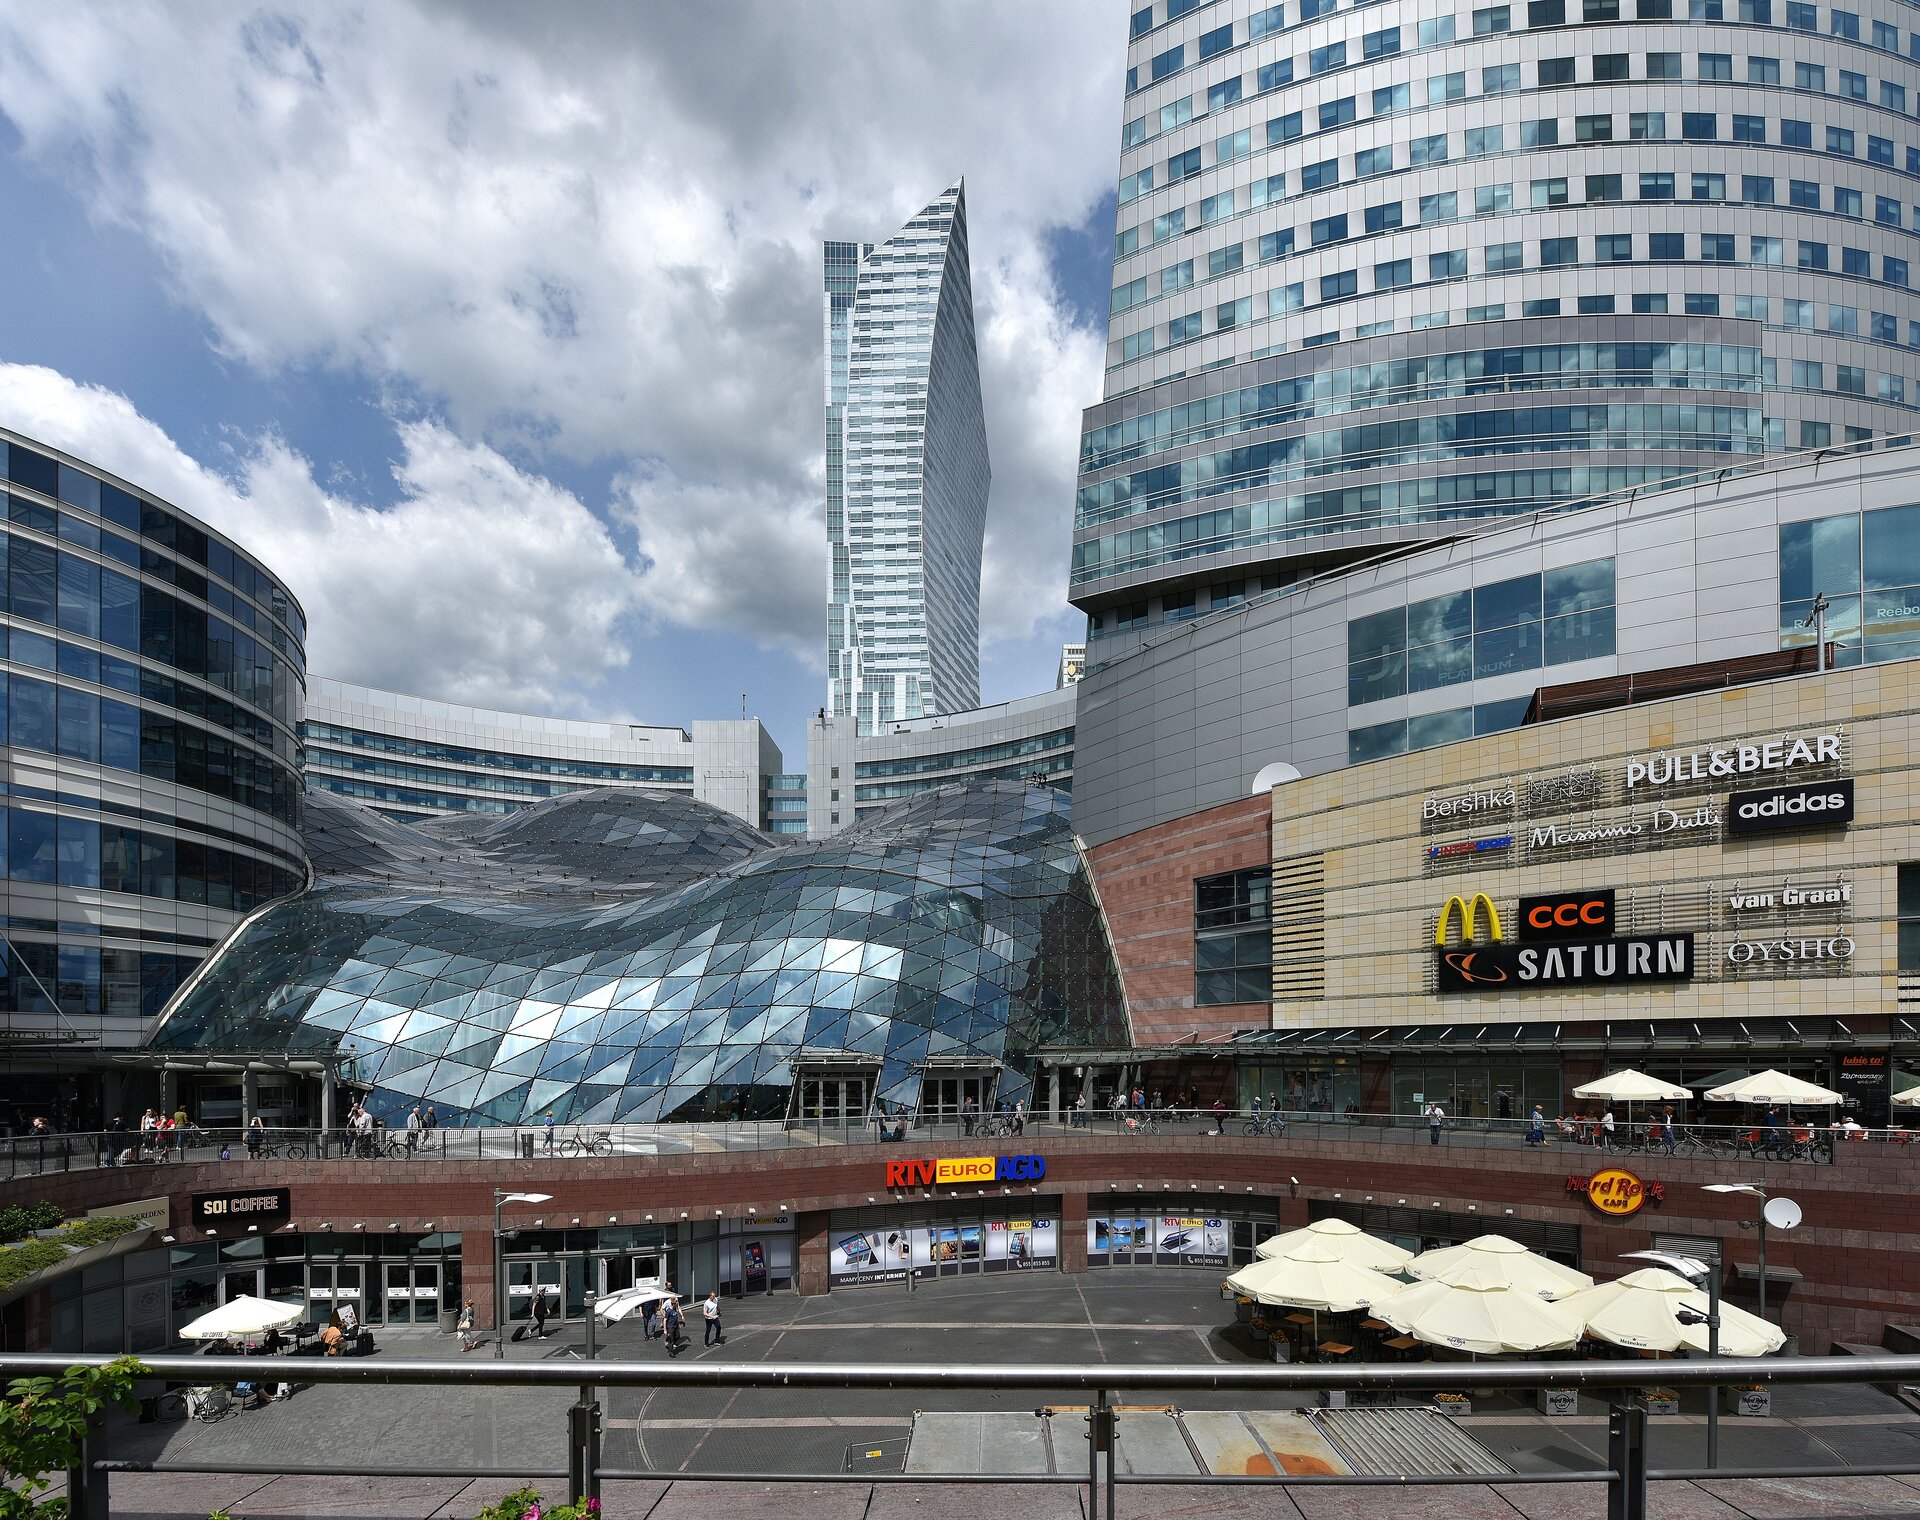 Ilustracja przedstawia Centrum Handlowe Złote Tarasy w Warszawie. Widzimy, że budynki centrum handlowego są całe oszklone i mają naturalne kształty jest to architektura blob, projektanta kalifornijskiej pracowni Jerde Partnership.